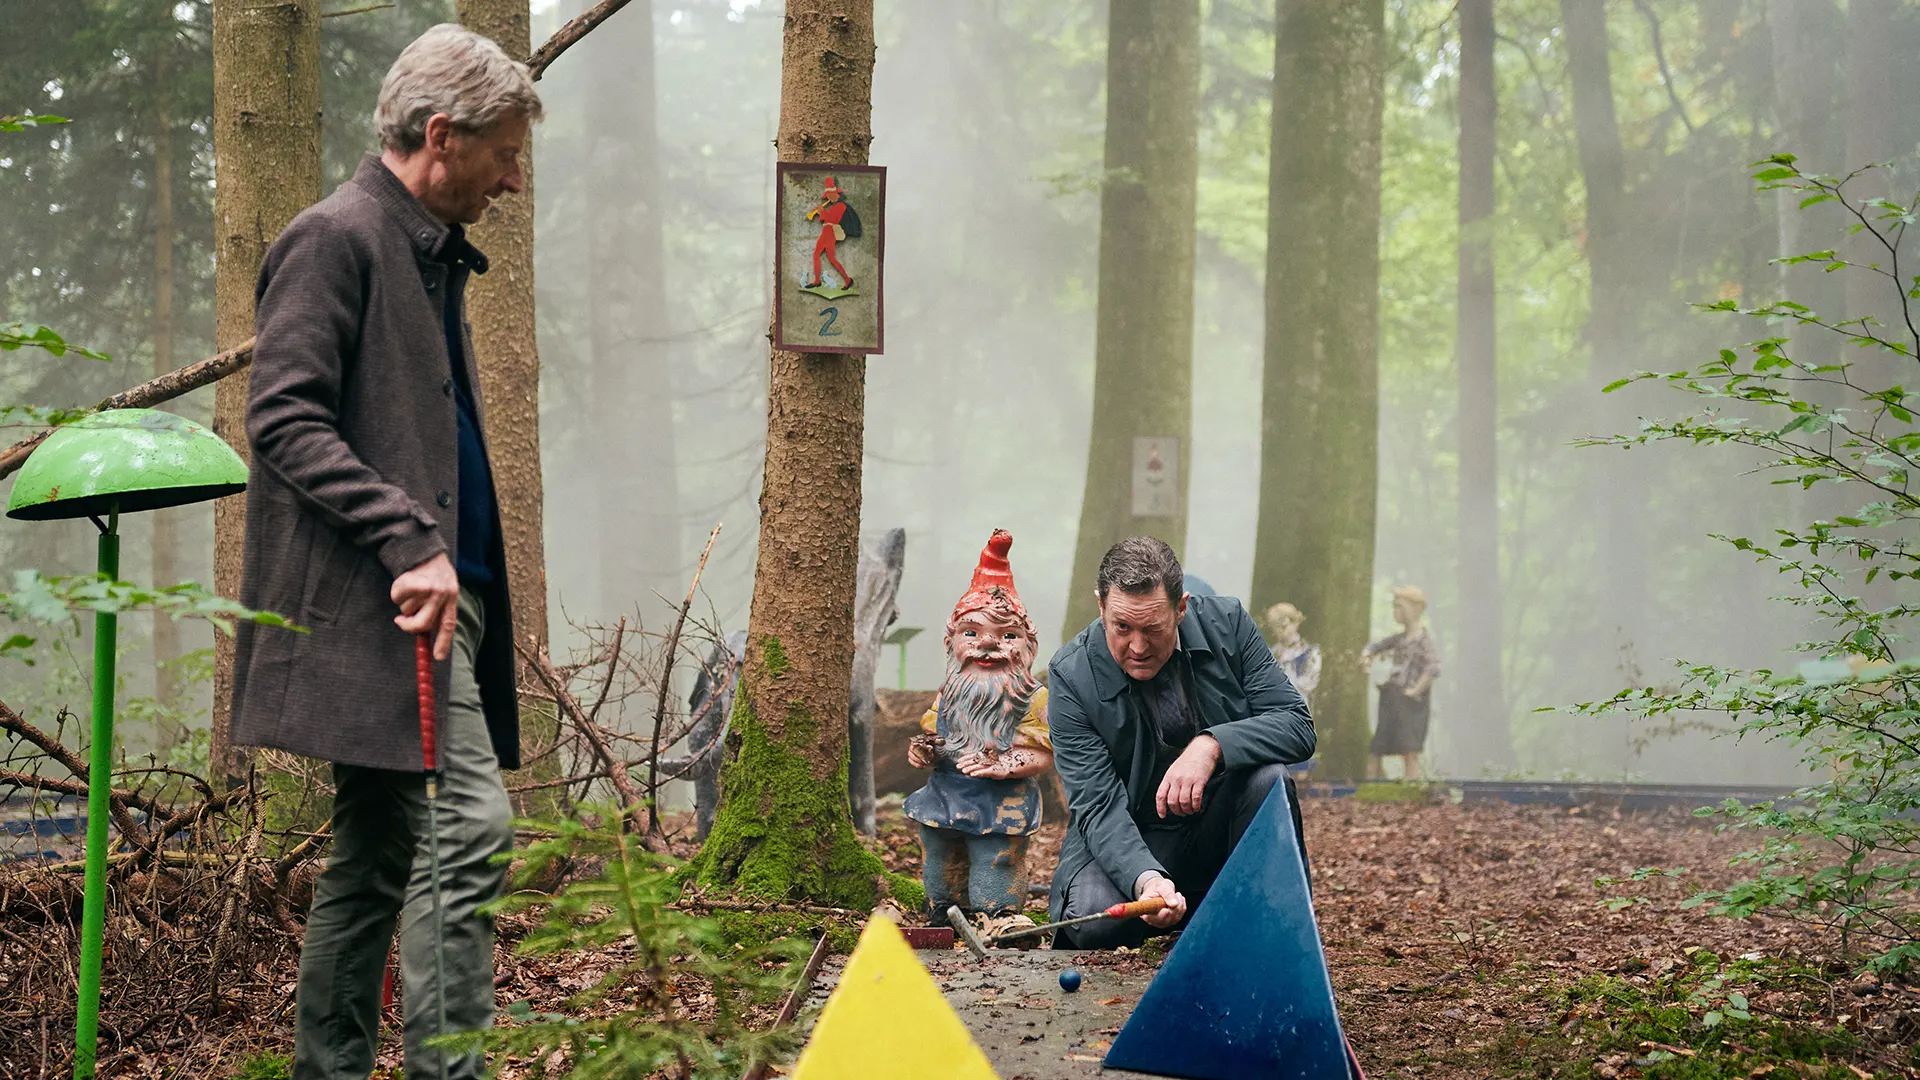 Stefan Schwab und Thomas Falbner spielen Minigolf in einem Wald. Thomas kniet neben einem Gartenzwerg und versucht die beste Bahn für seine Kugel zu finden.